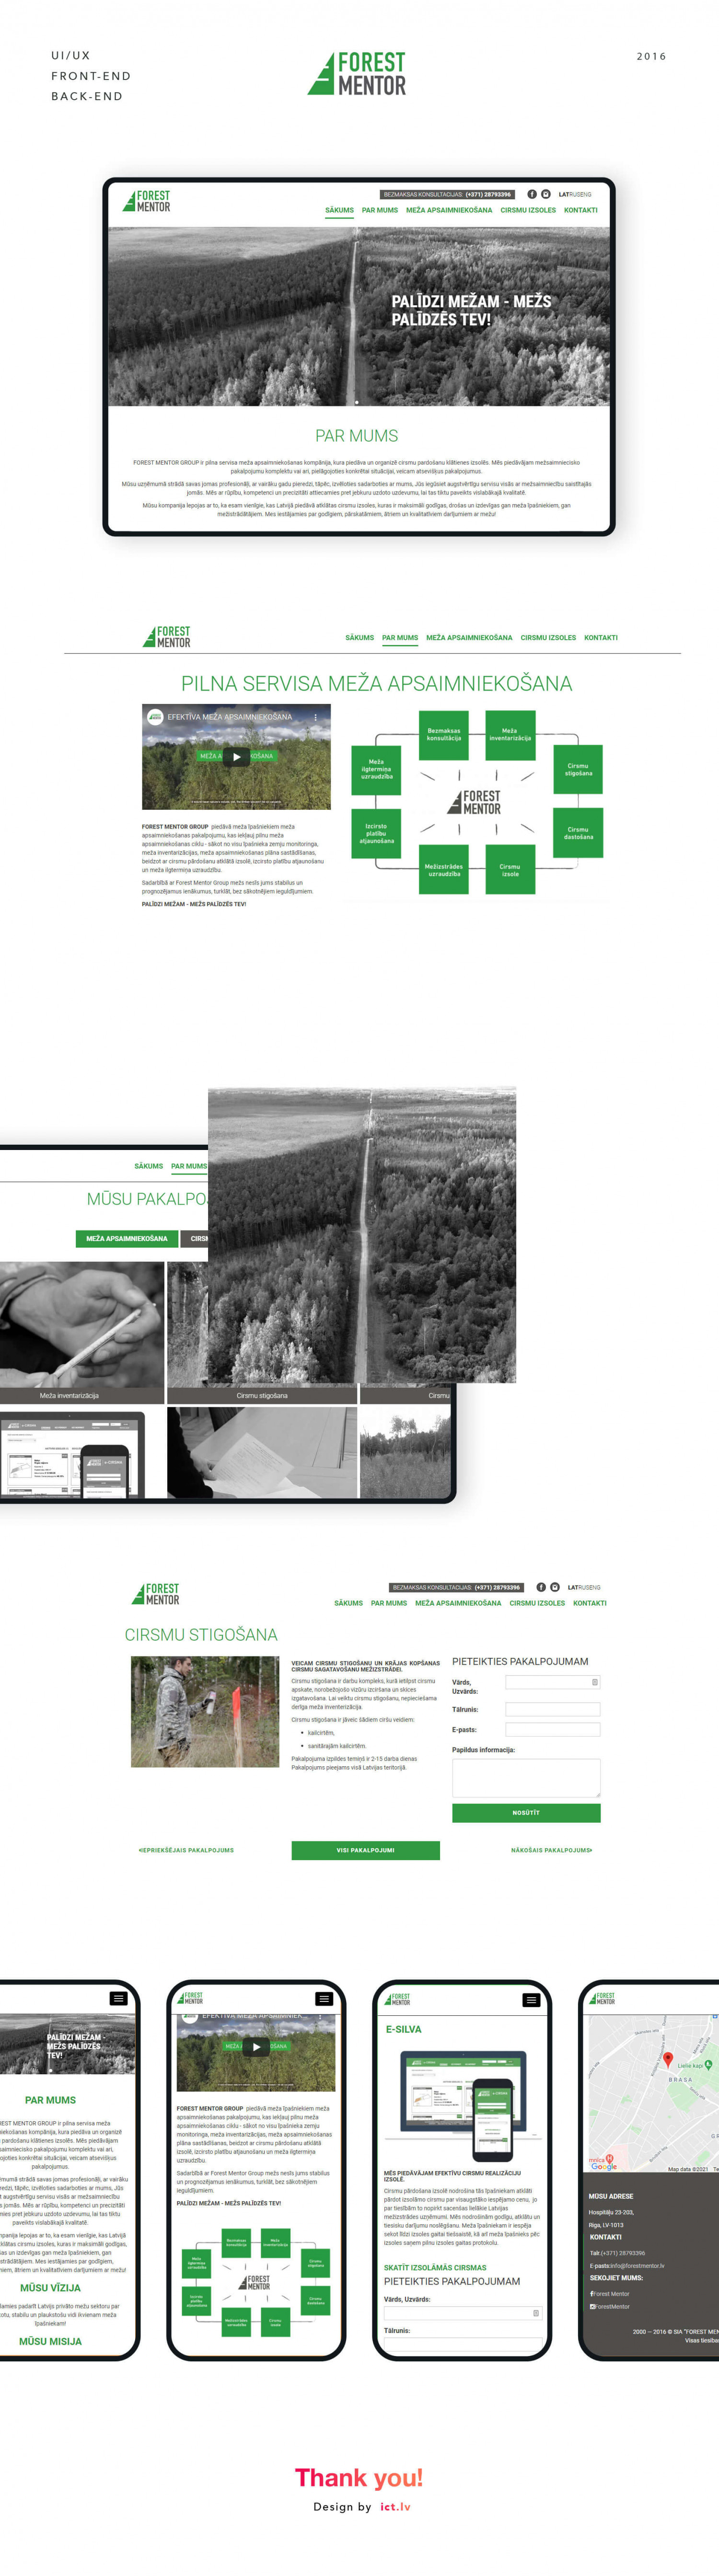 Forest Mentor website development